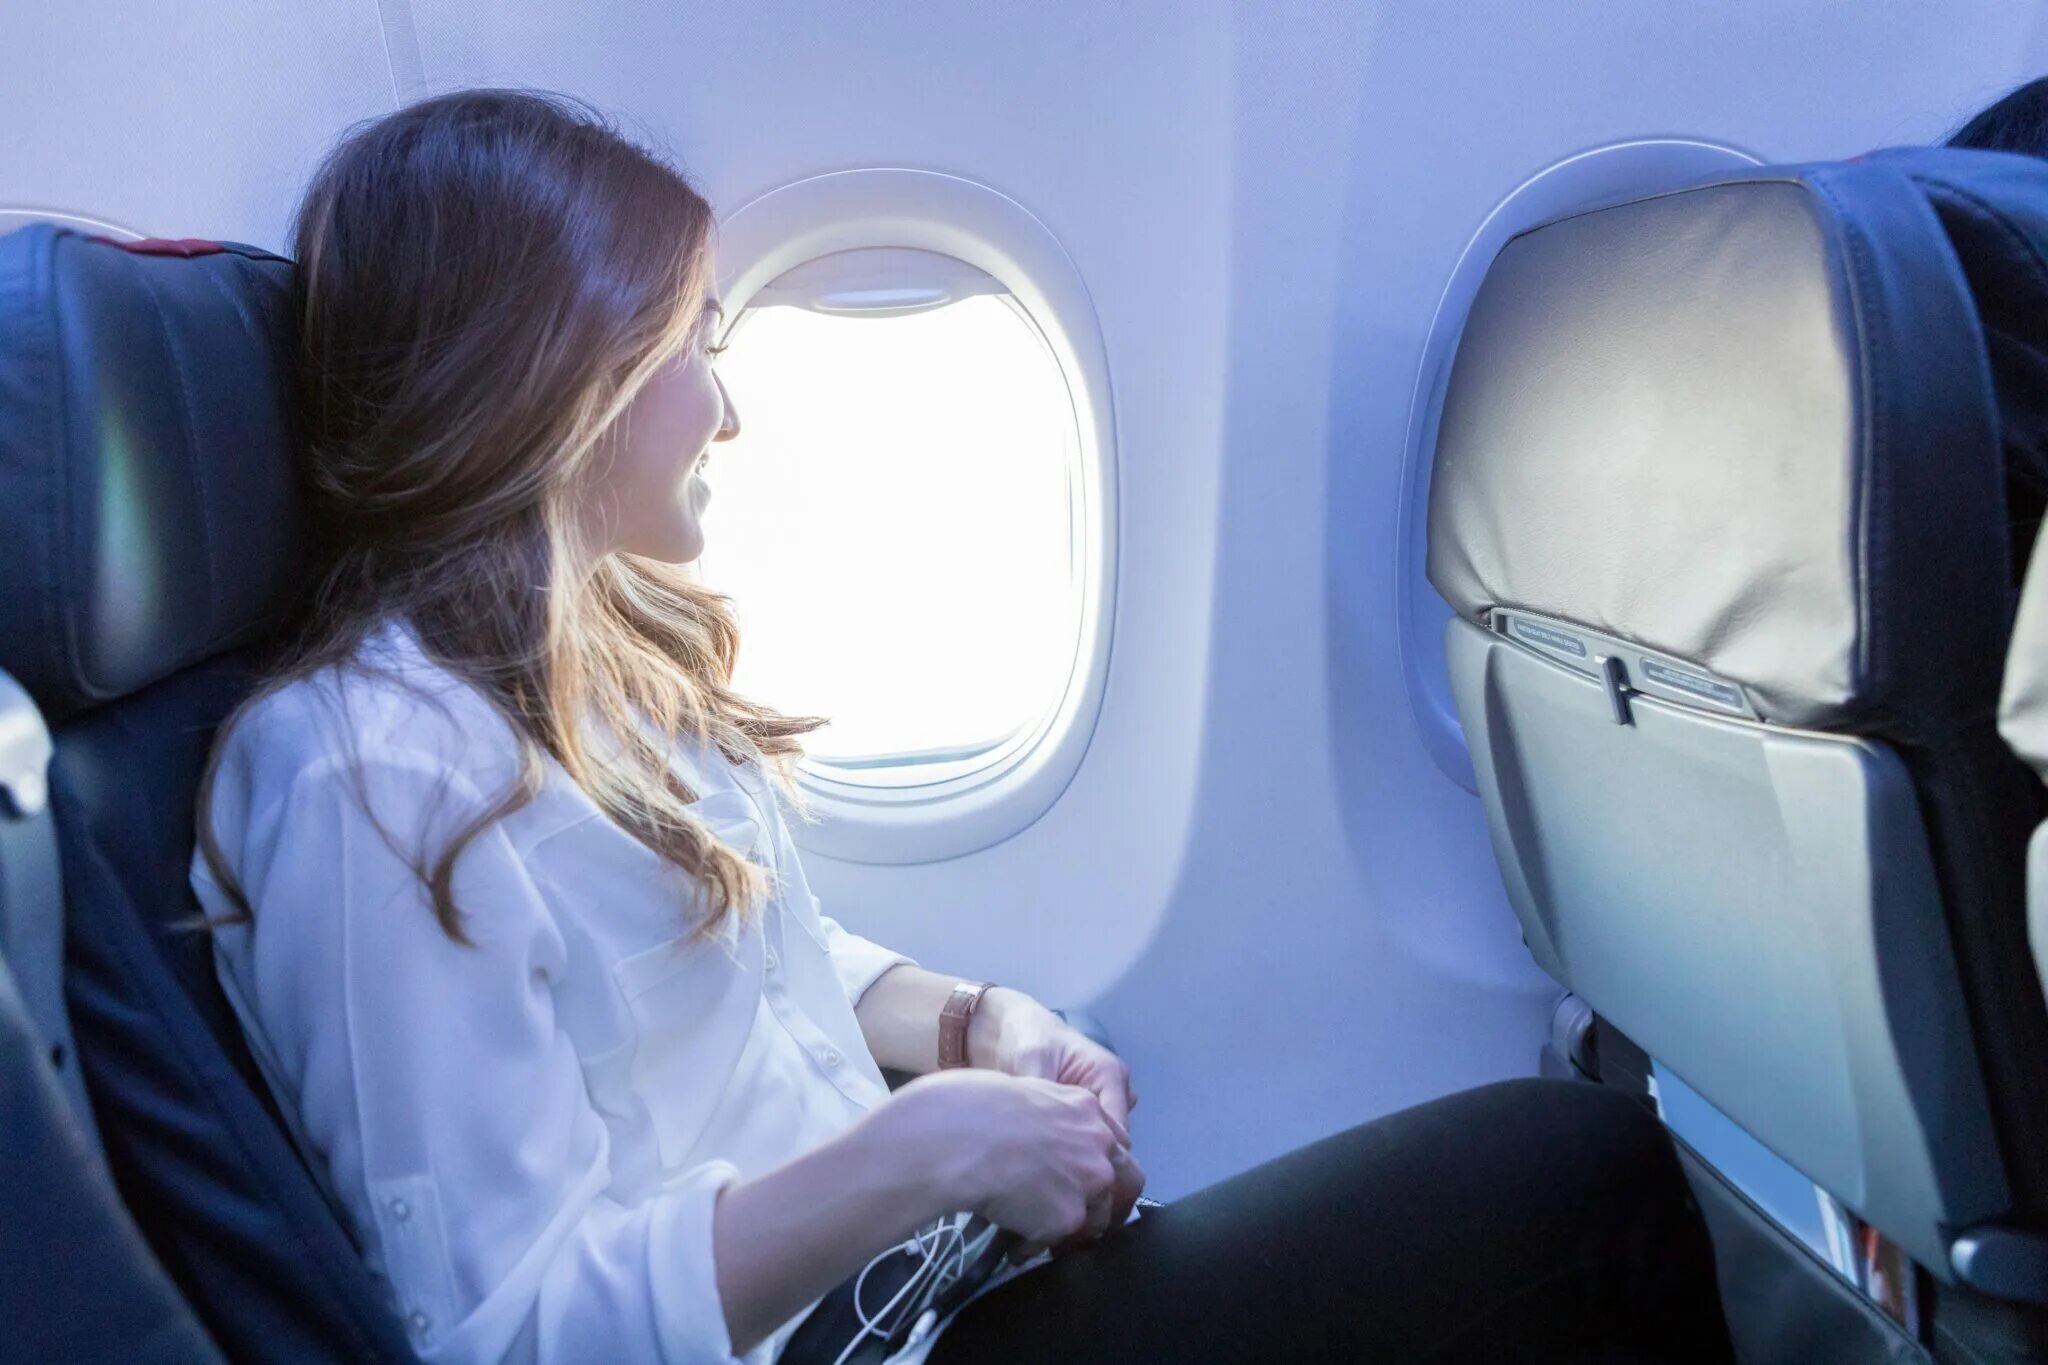 Ожидающий пассажир. Девушка в самолете. Люди в самолете. Самолет с пассажиром. Место у иллюминатора в самолете.